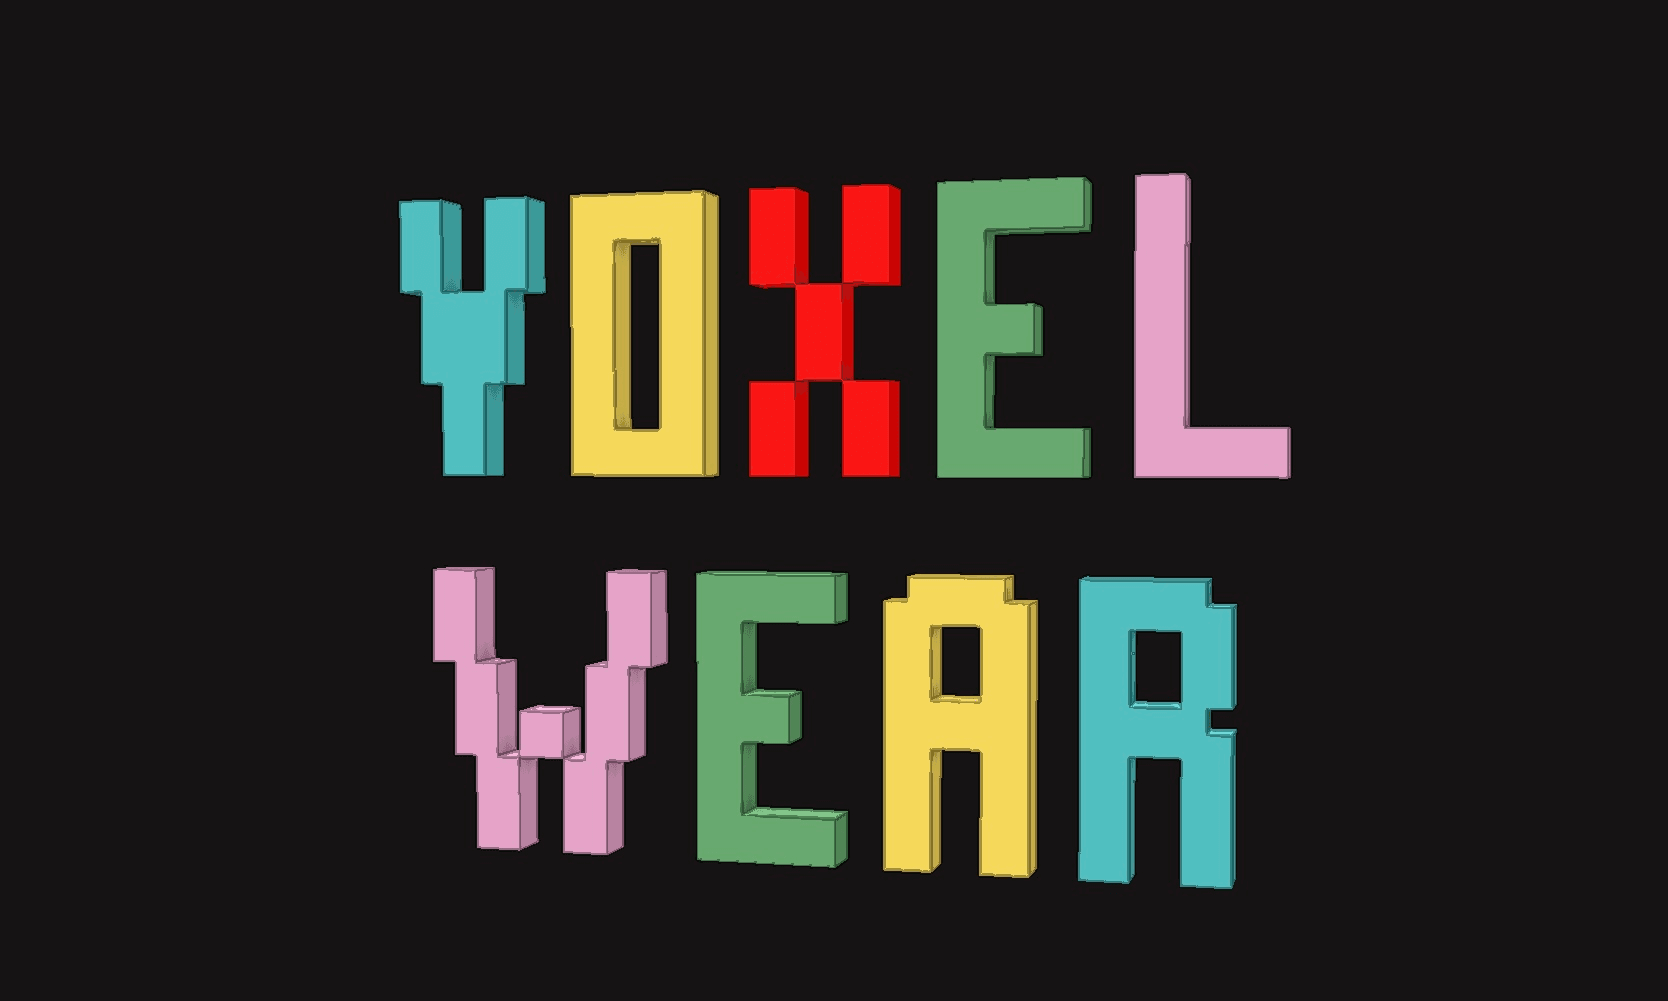 Voxel Wear